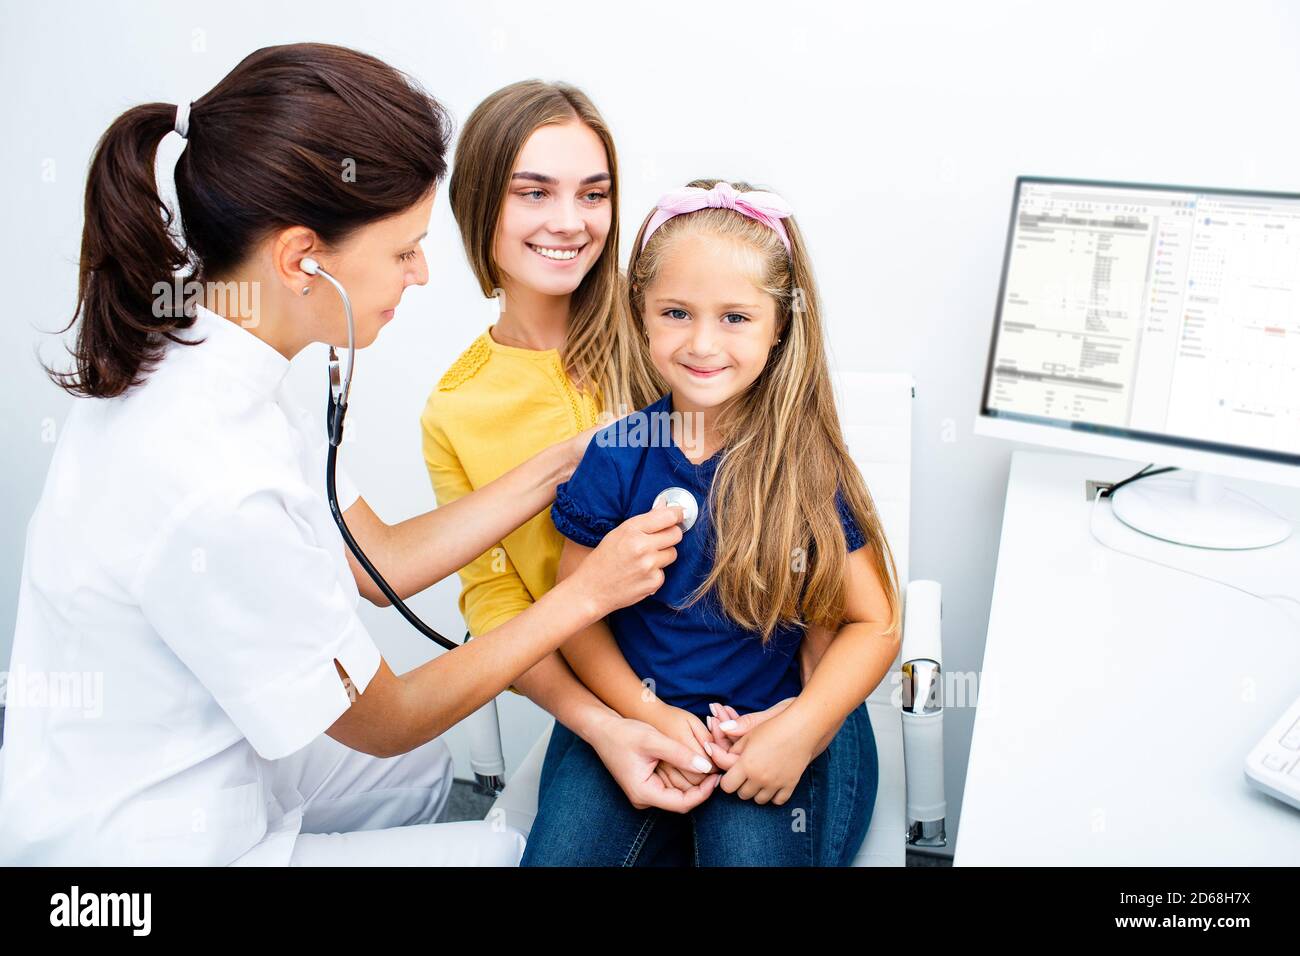 Pédiatre tenir un stéthoscope, communiquer avec une jeune fille patient consulter le médecin avec la mère. Vérifier les poumons cardiaques de l'enfant Banque D'Images